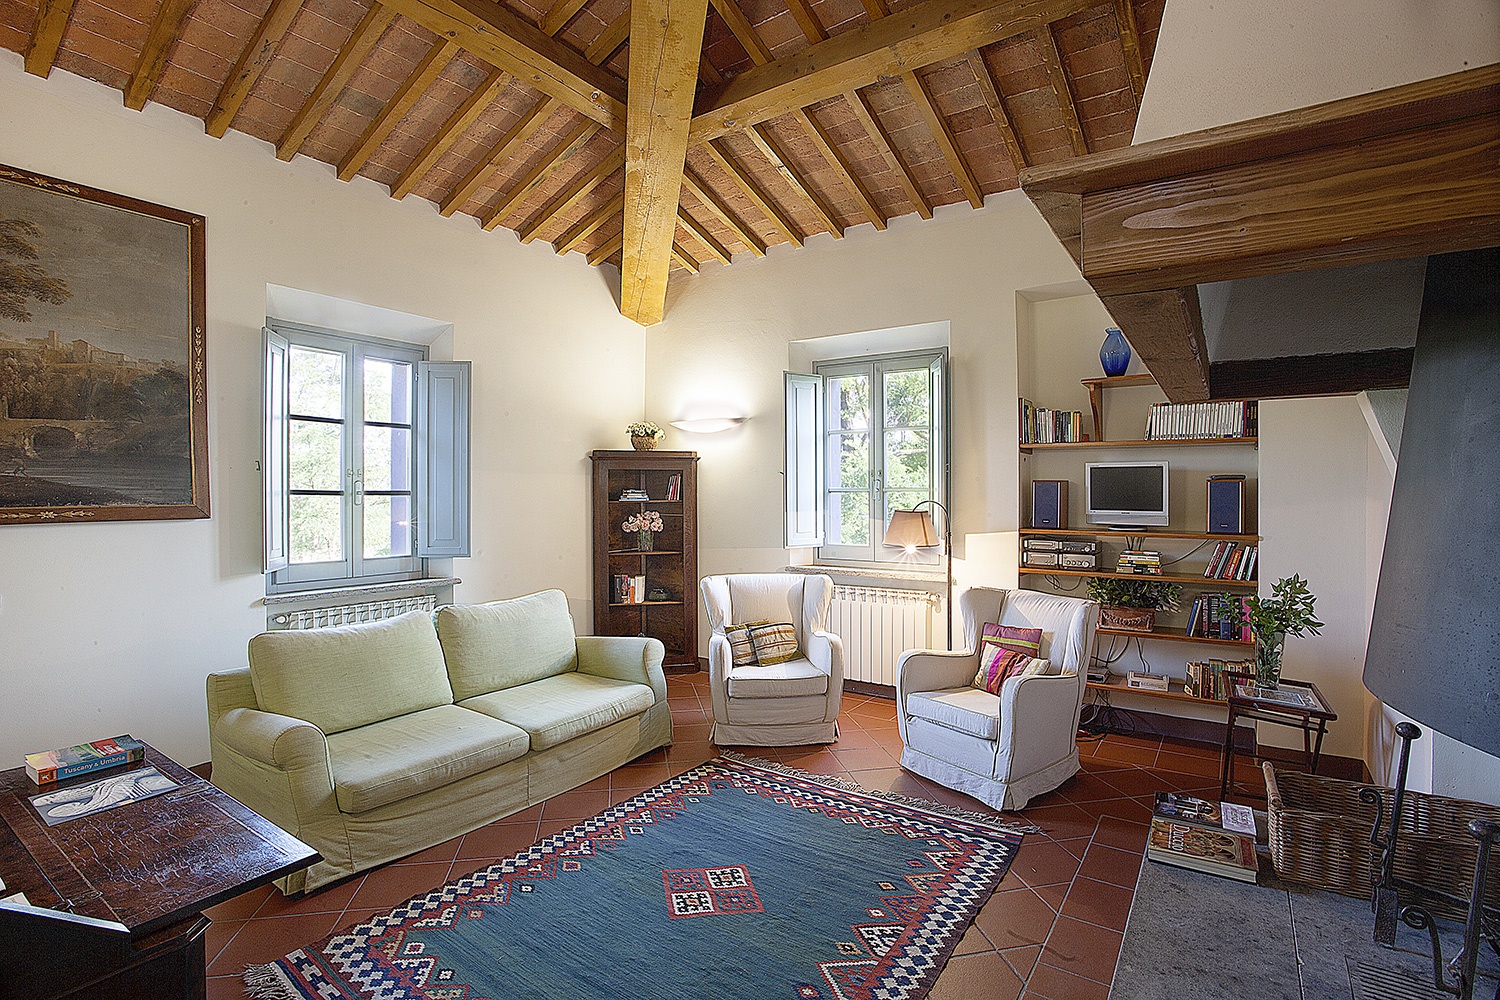 438_c306024_Kindvriendelijke luxe vakantie Toscane Siena Val D’Orcia kindvriendelijke Poggio Casale (13)